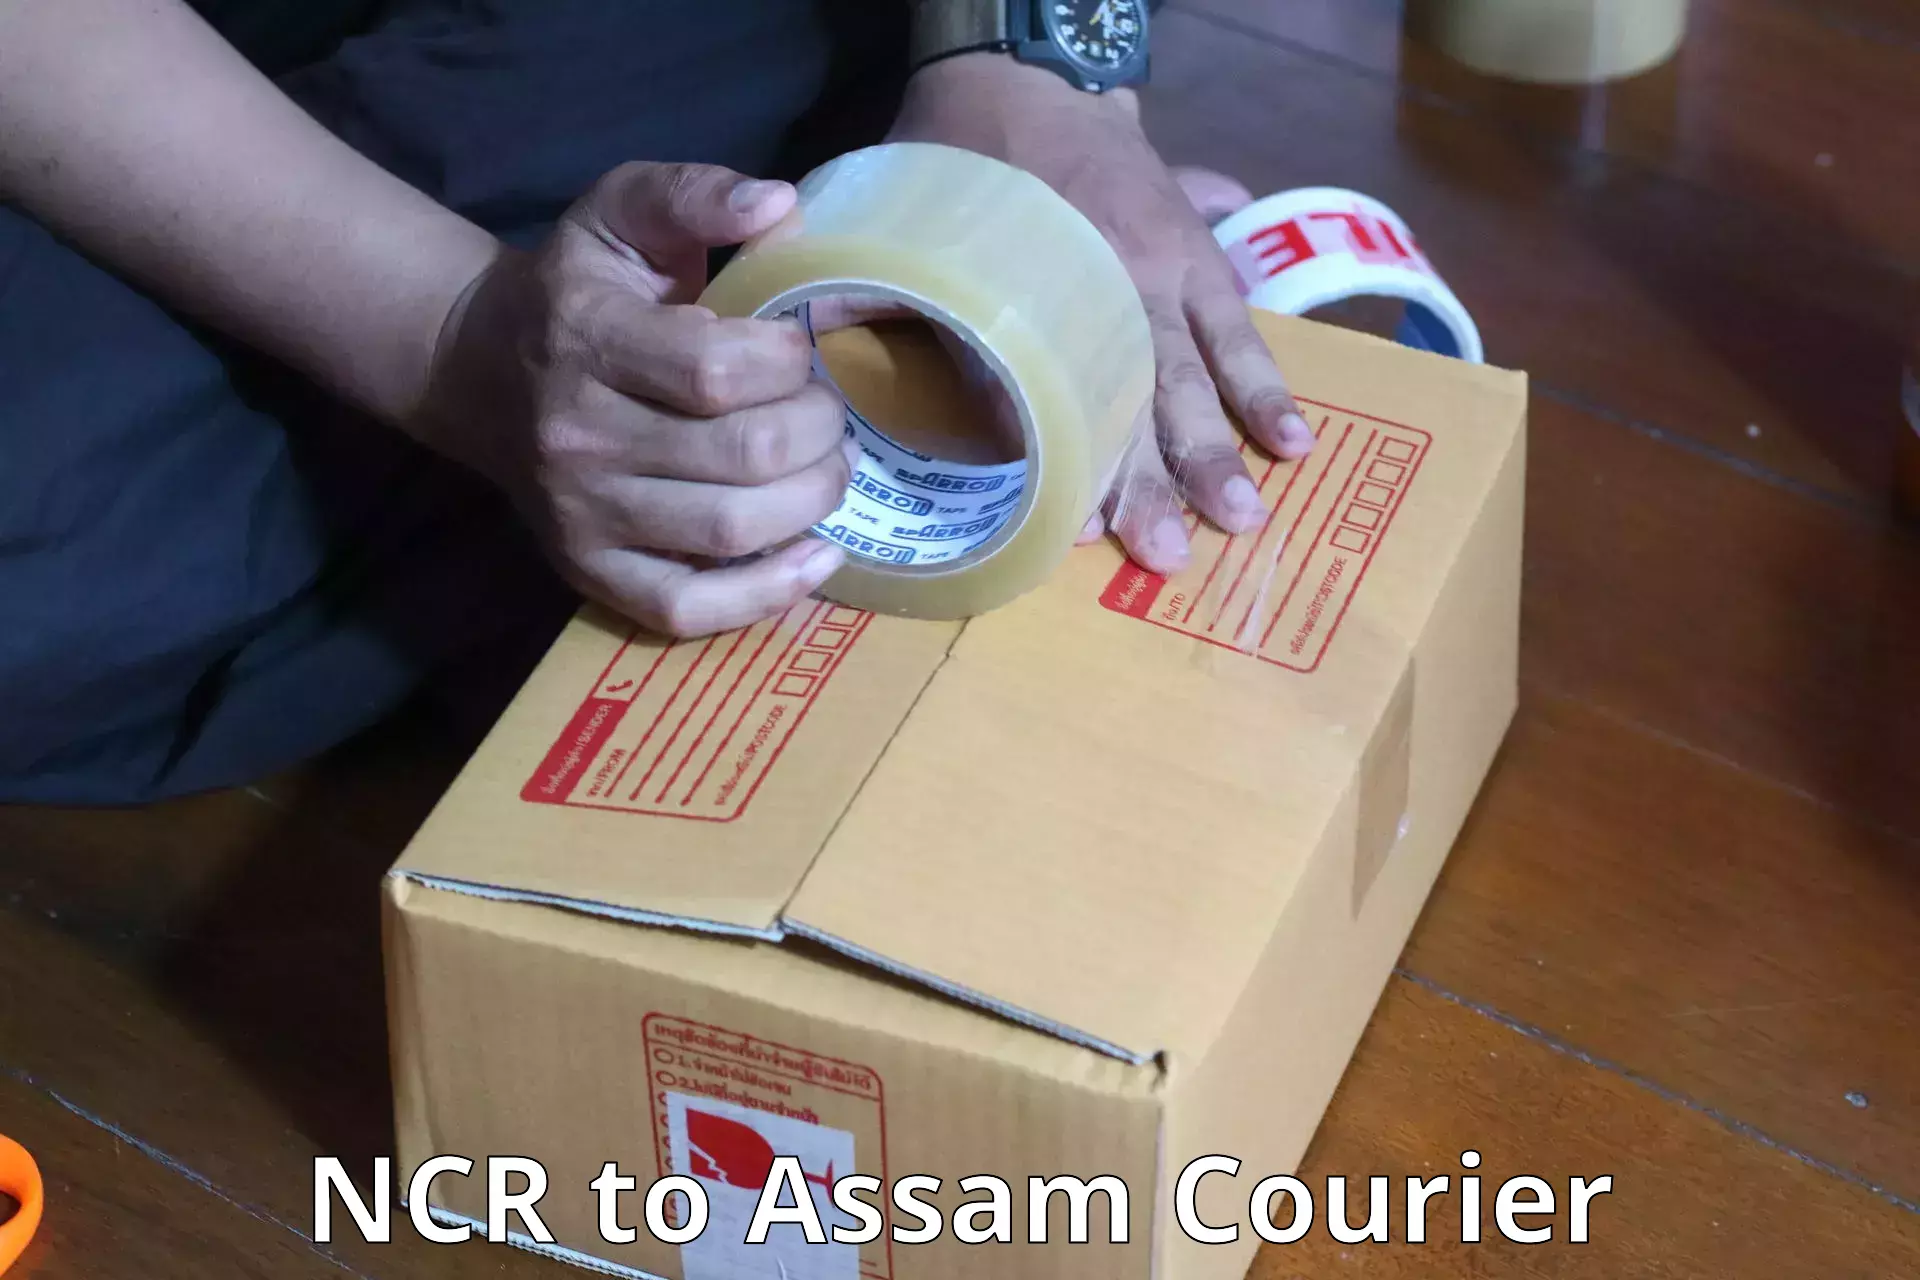 Luggage shipment tracking NCR to Nagaon